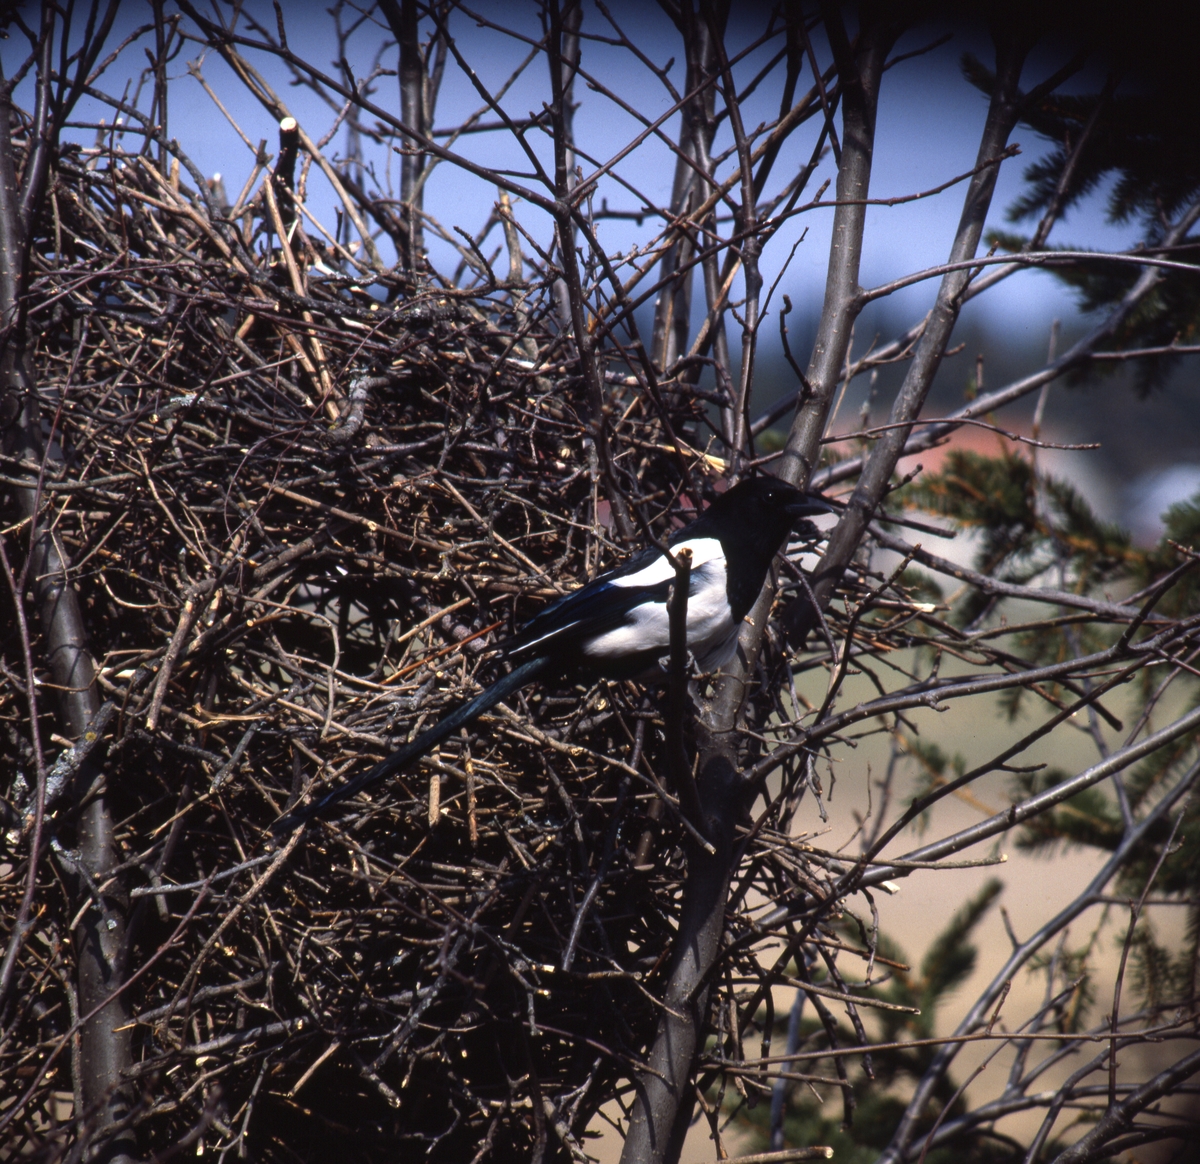 Skata vid sitt bo av kvistar, maj 1978.